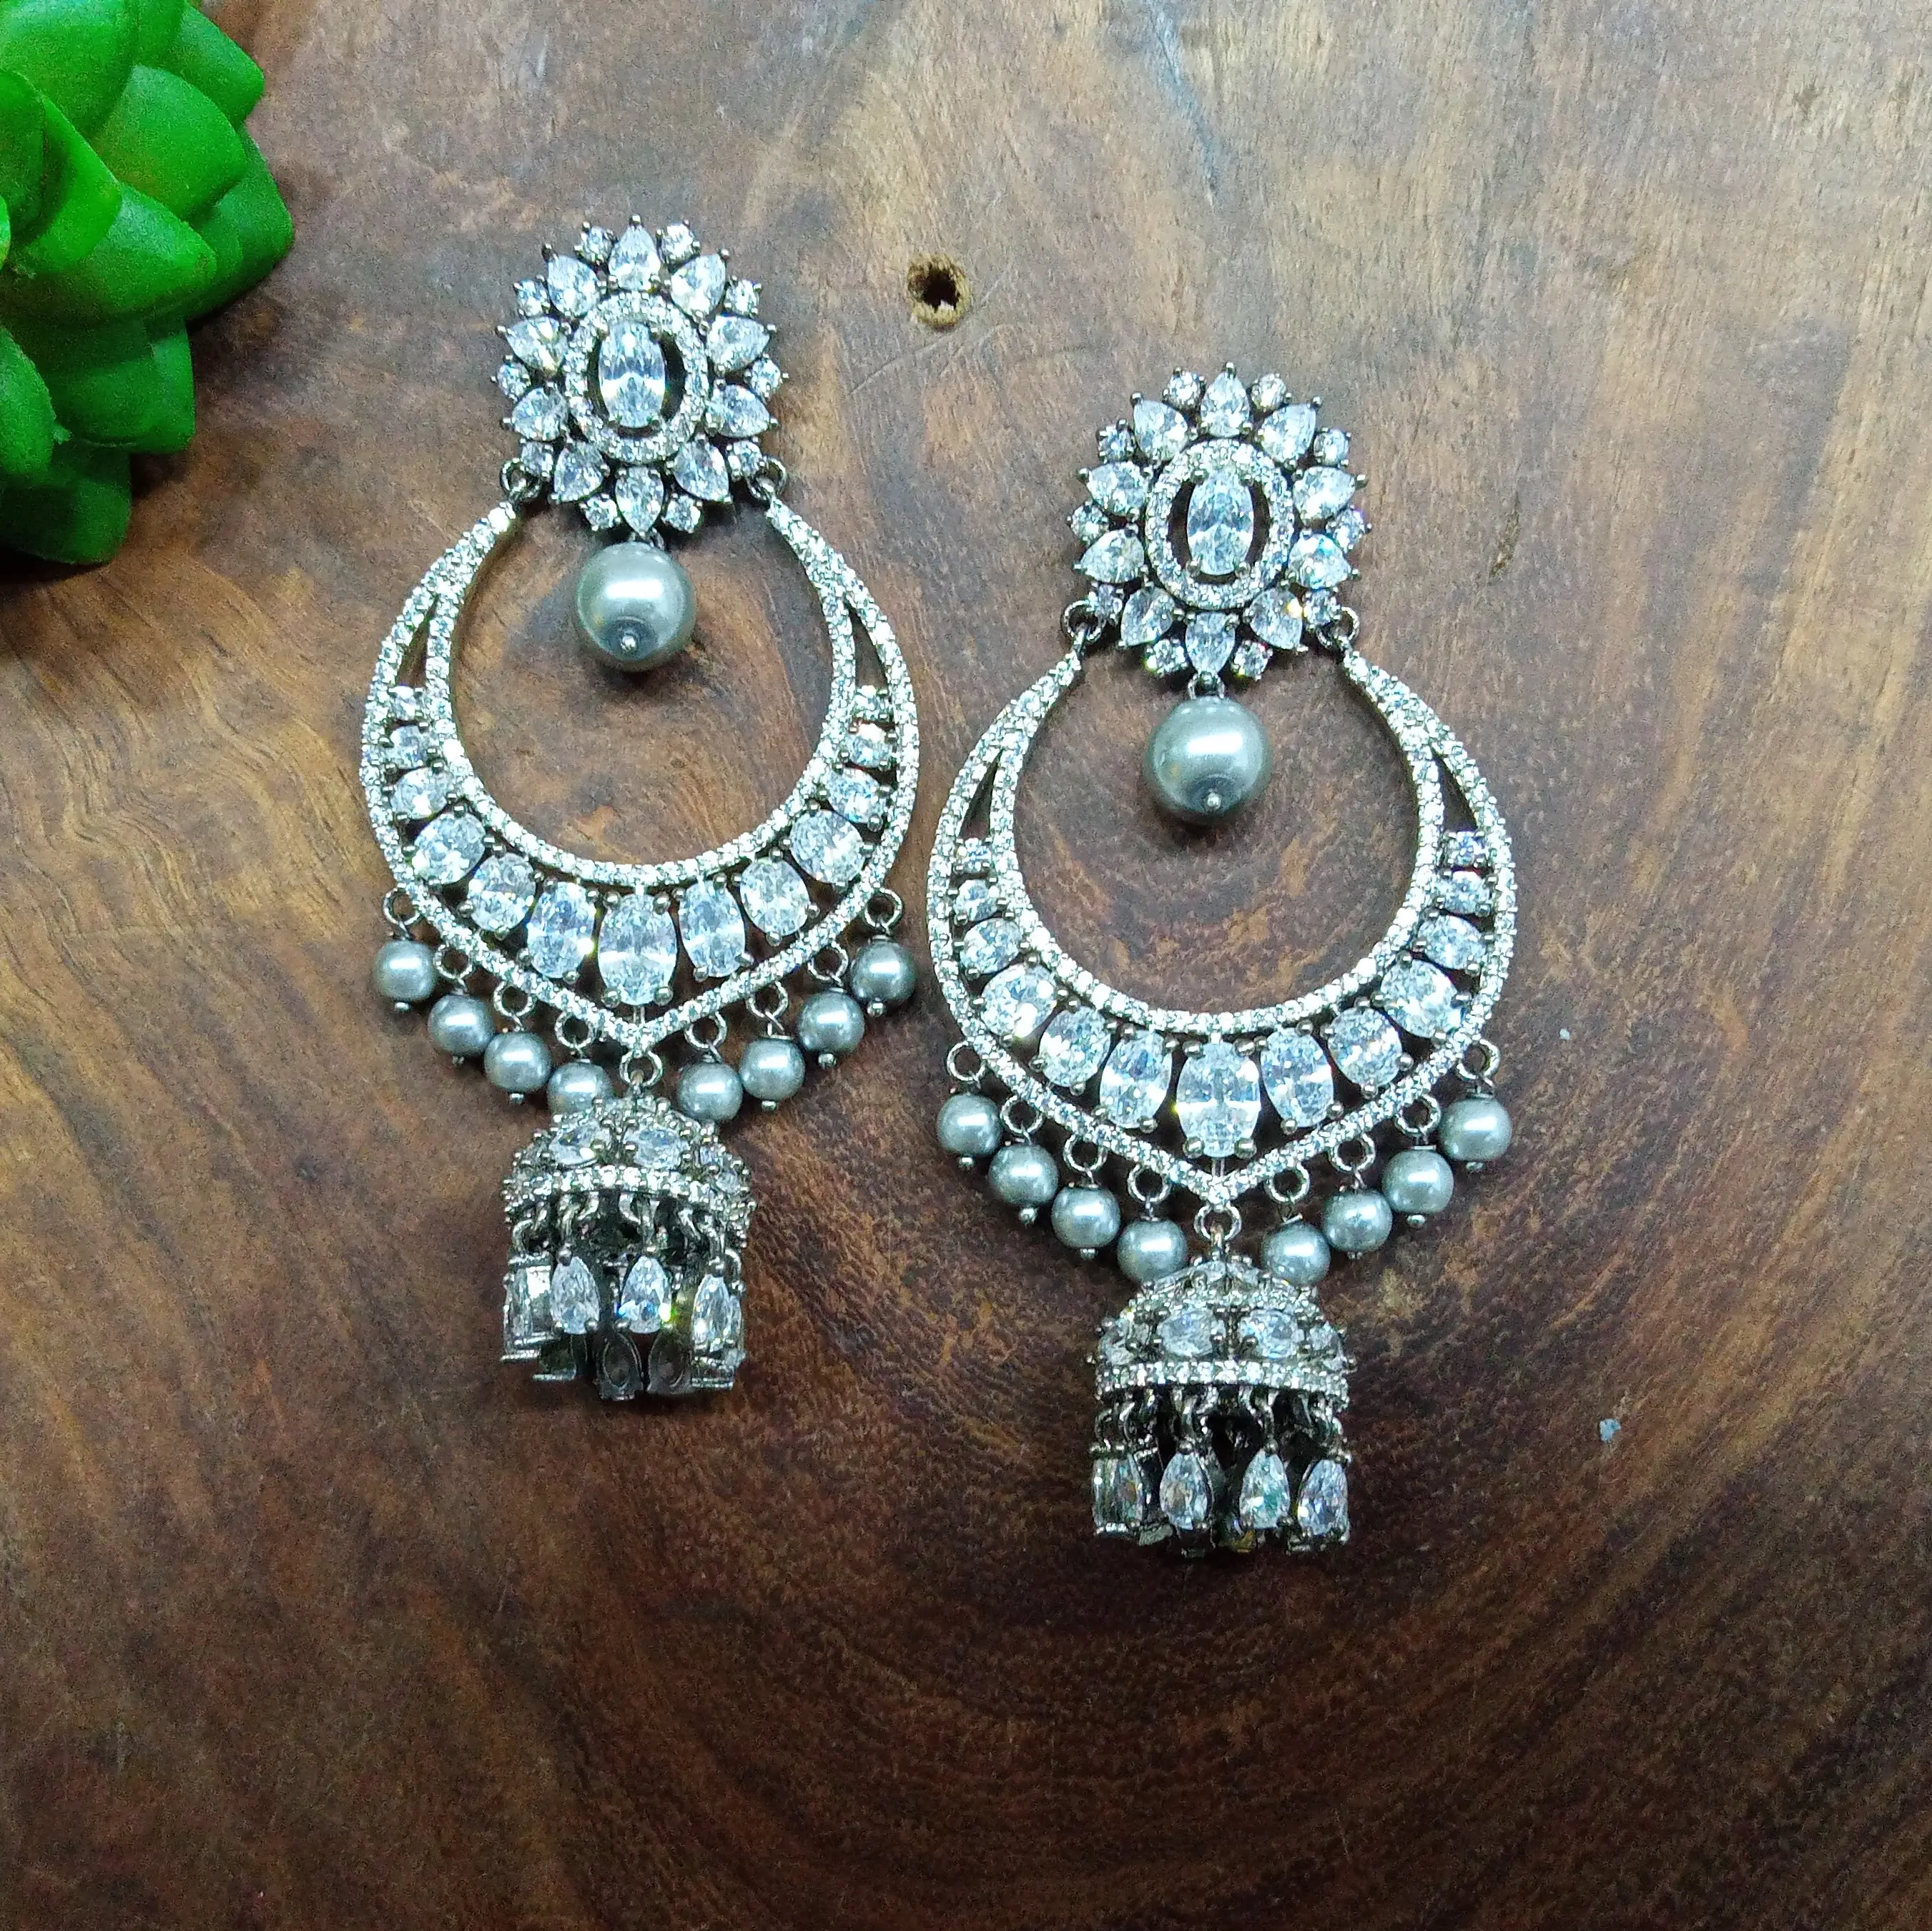 Kundan conjunto de jóias pesadas nupcial, tamanho real, muito bonito, olhante, bonito, conjunto para mulheres, ao melhor preço